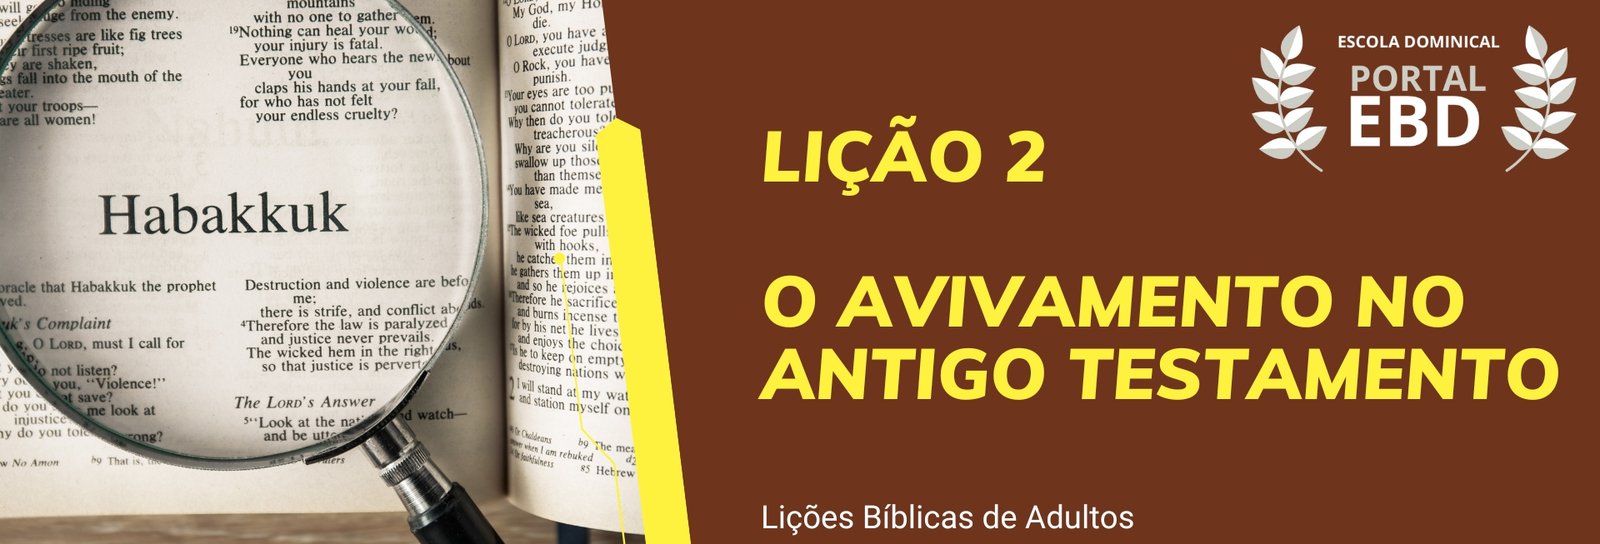 Lição 2 - O avivamento no Antigo Testamento IV